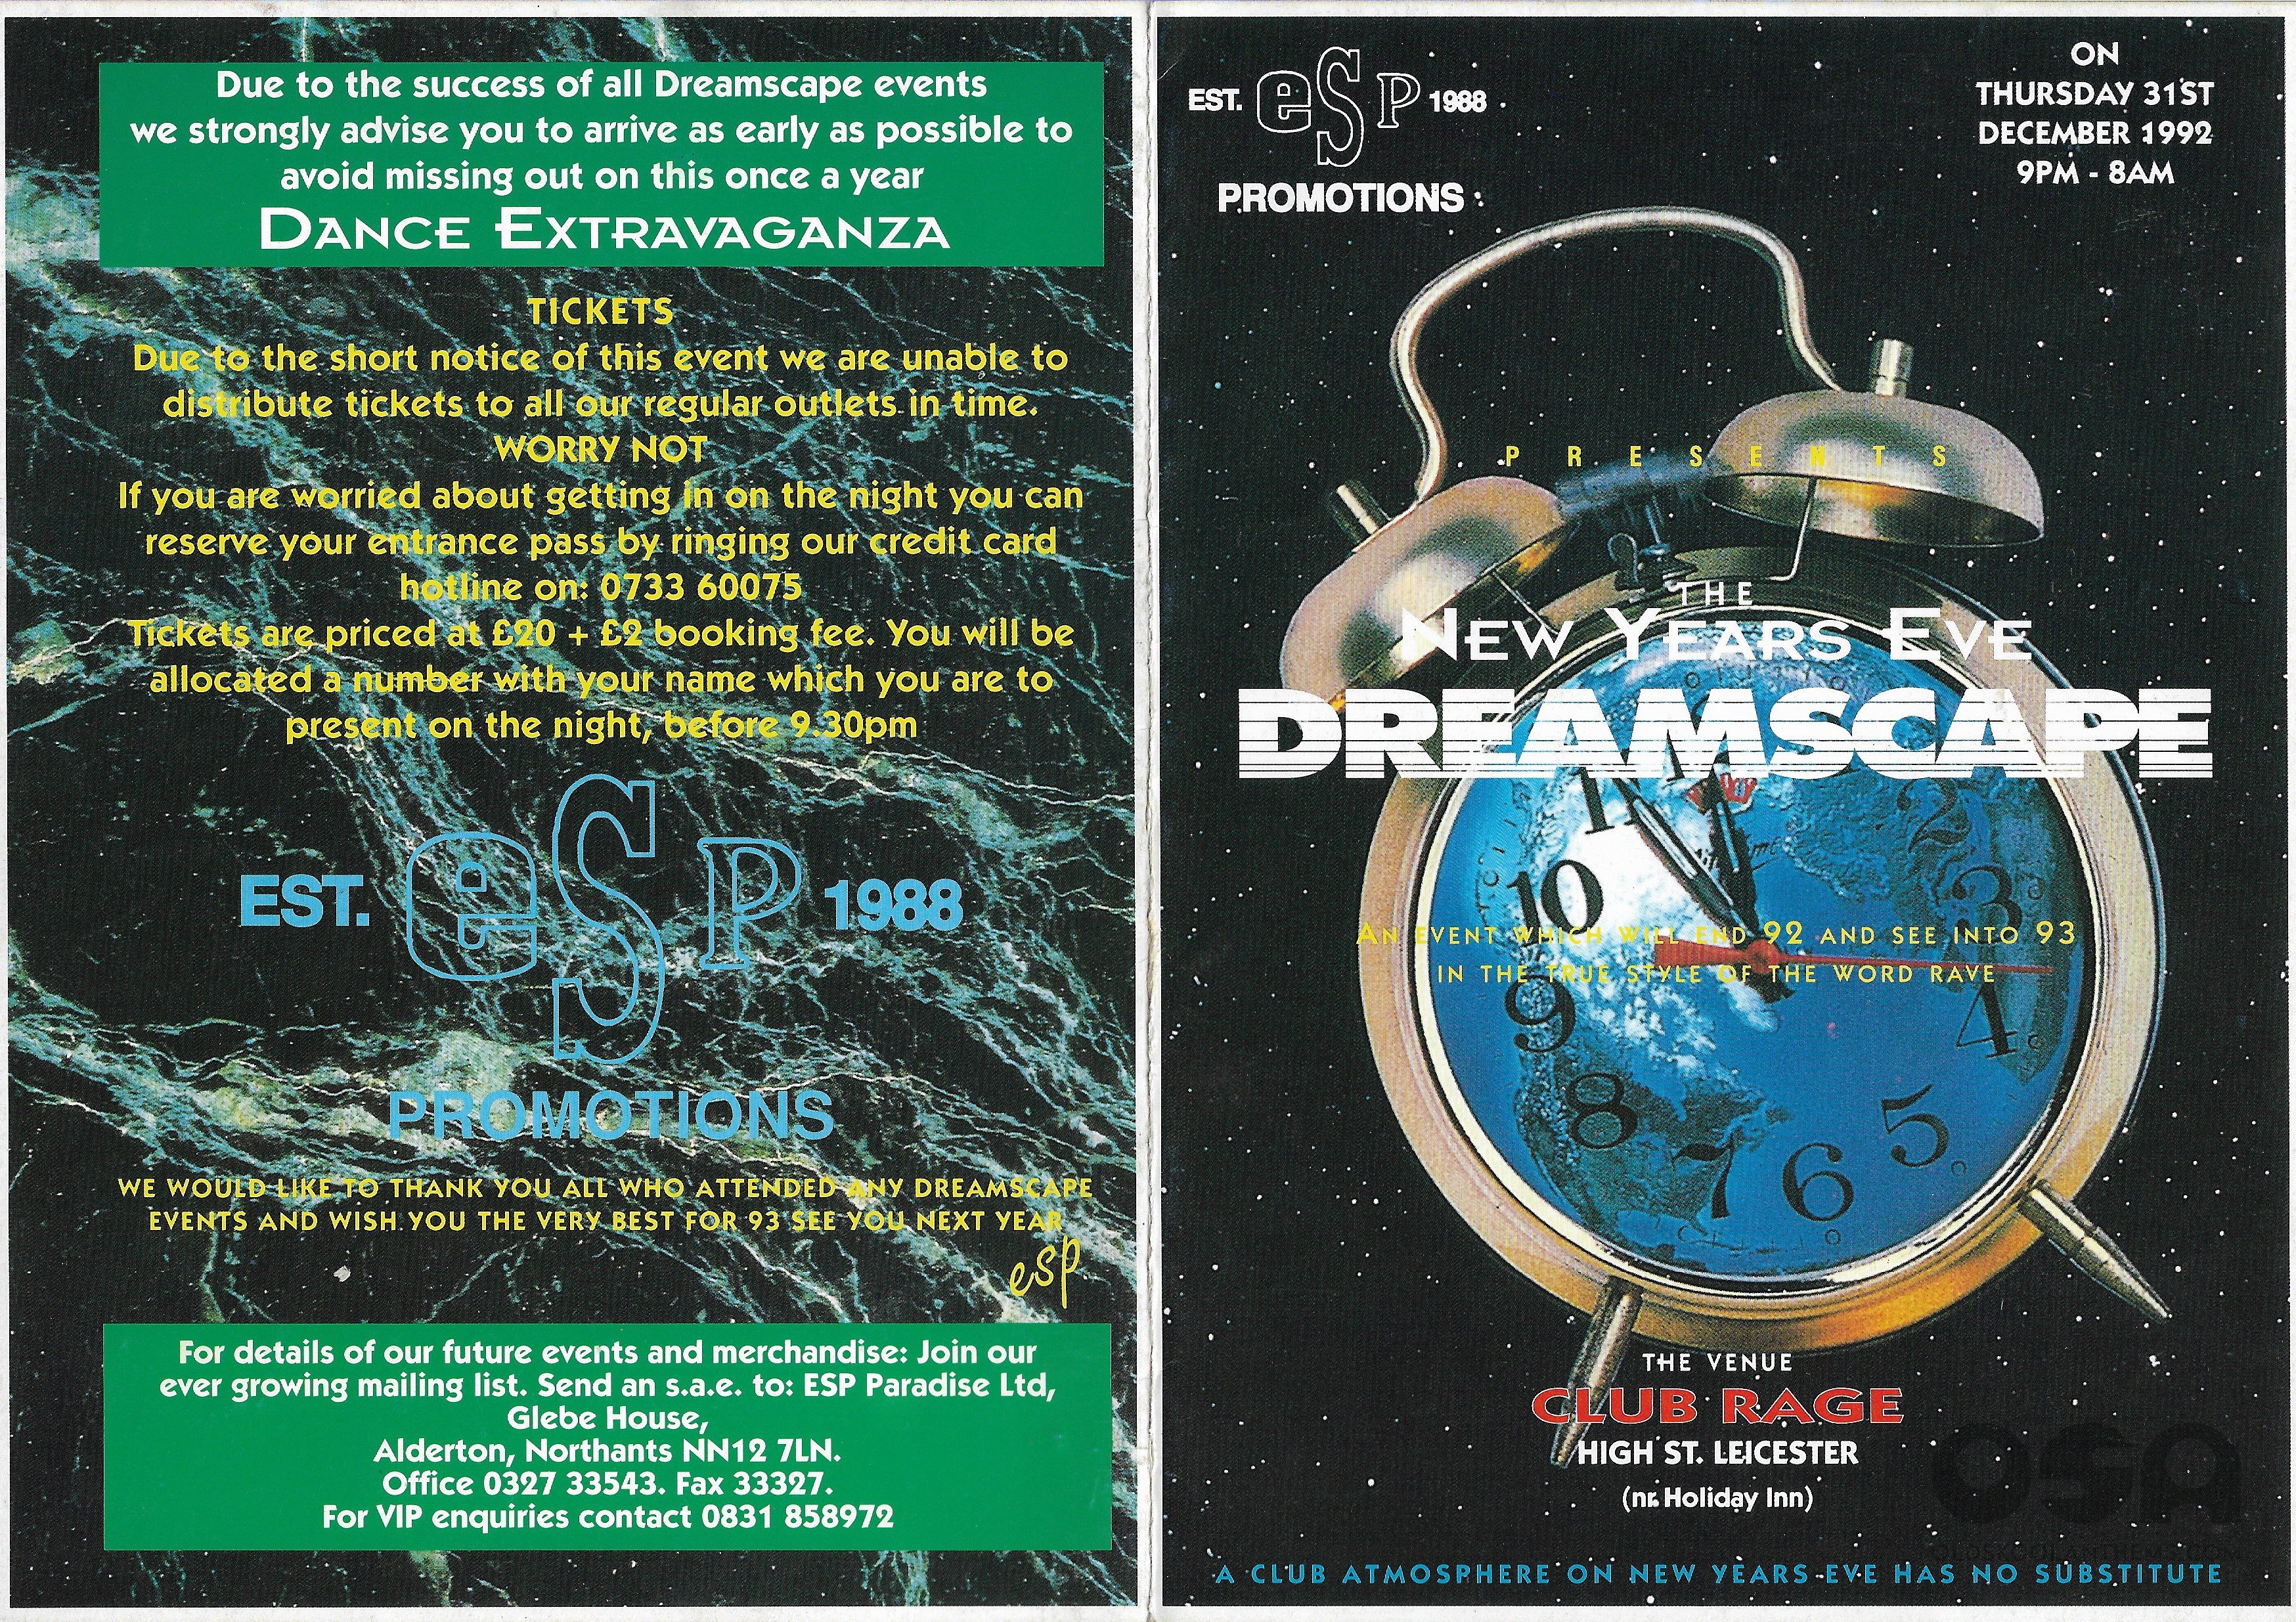 Dreamscape NYE @ Club Rage 31st December 1992 - Front & Back .jpg